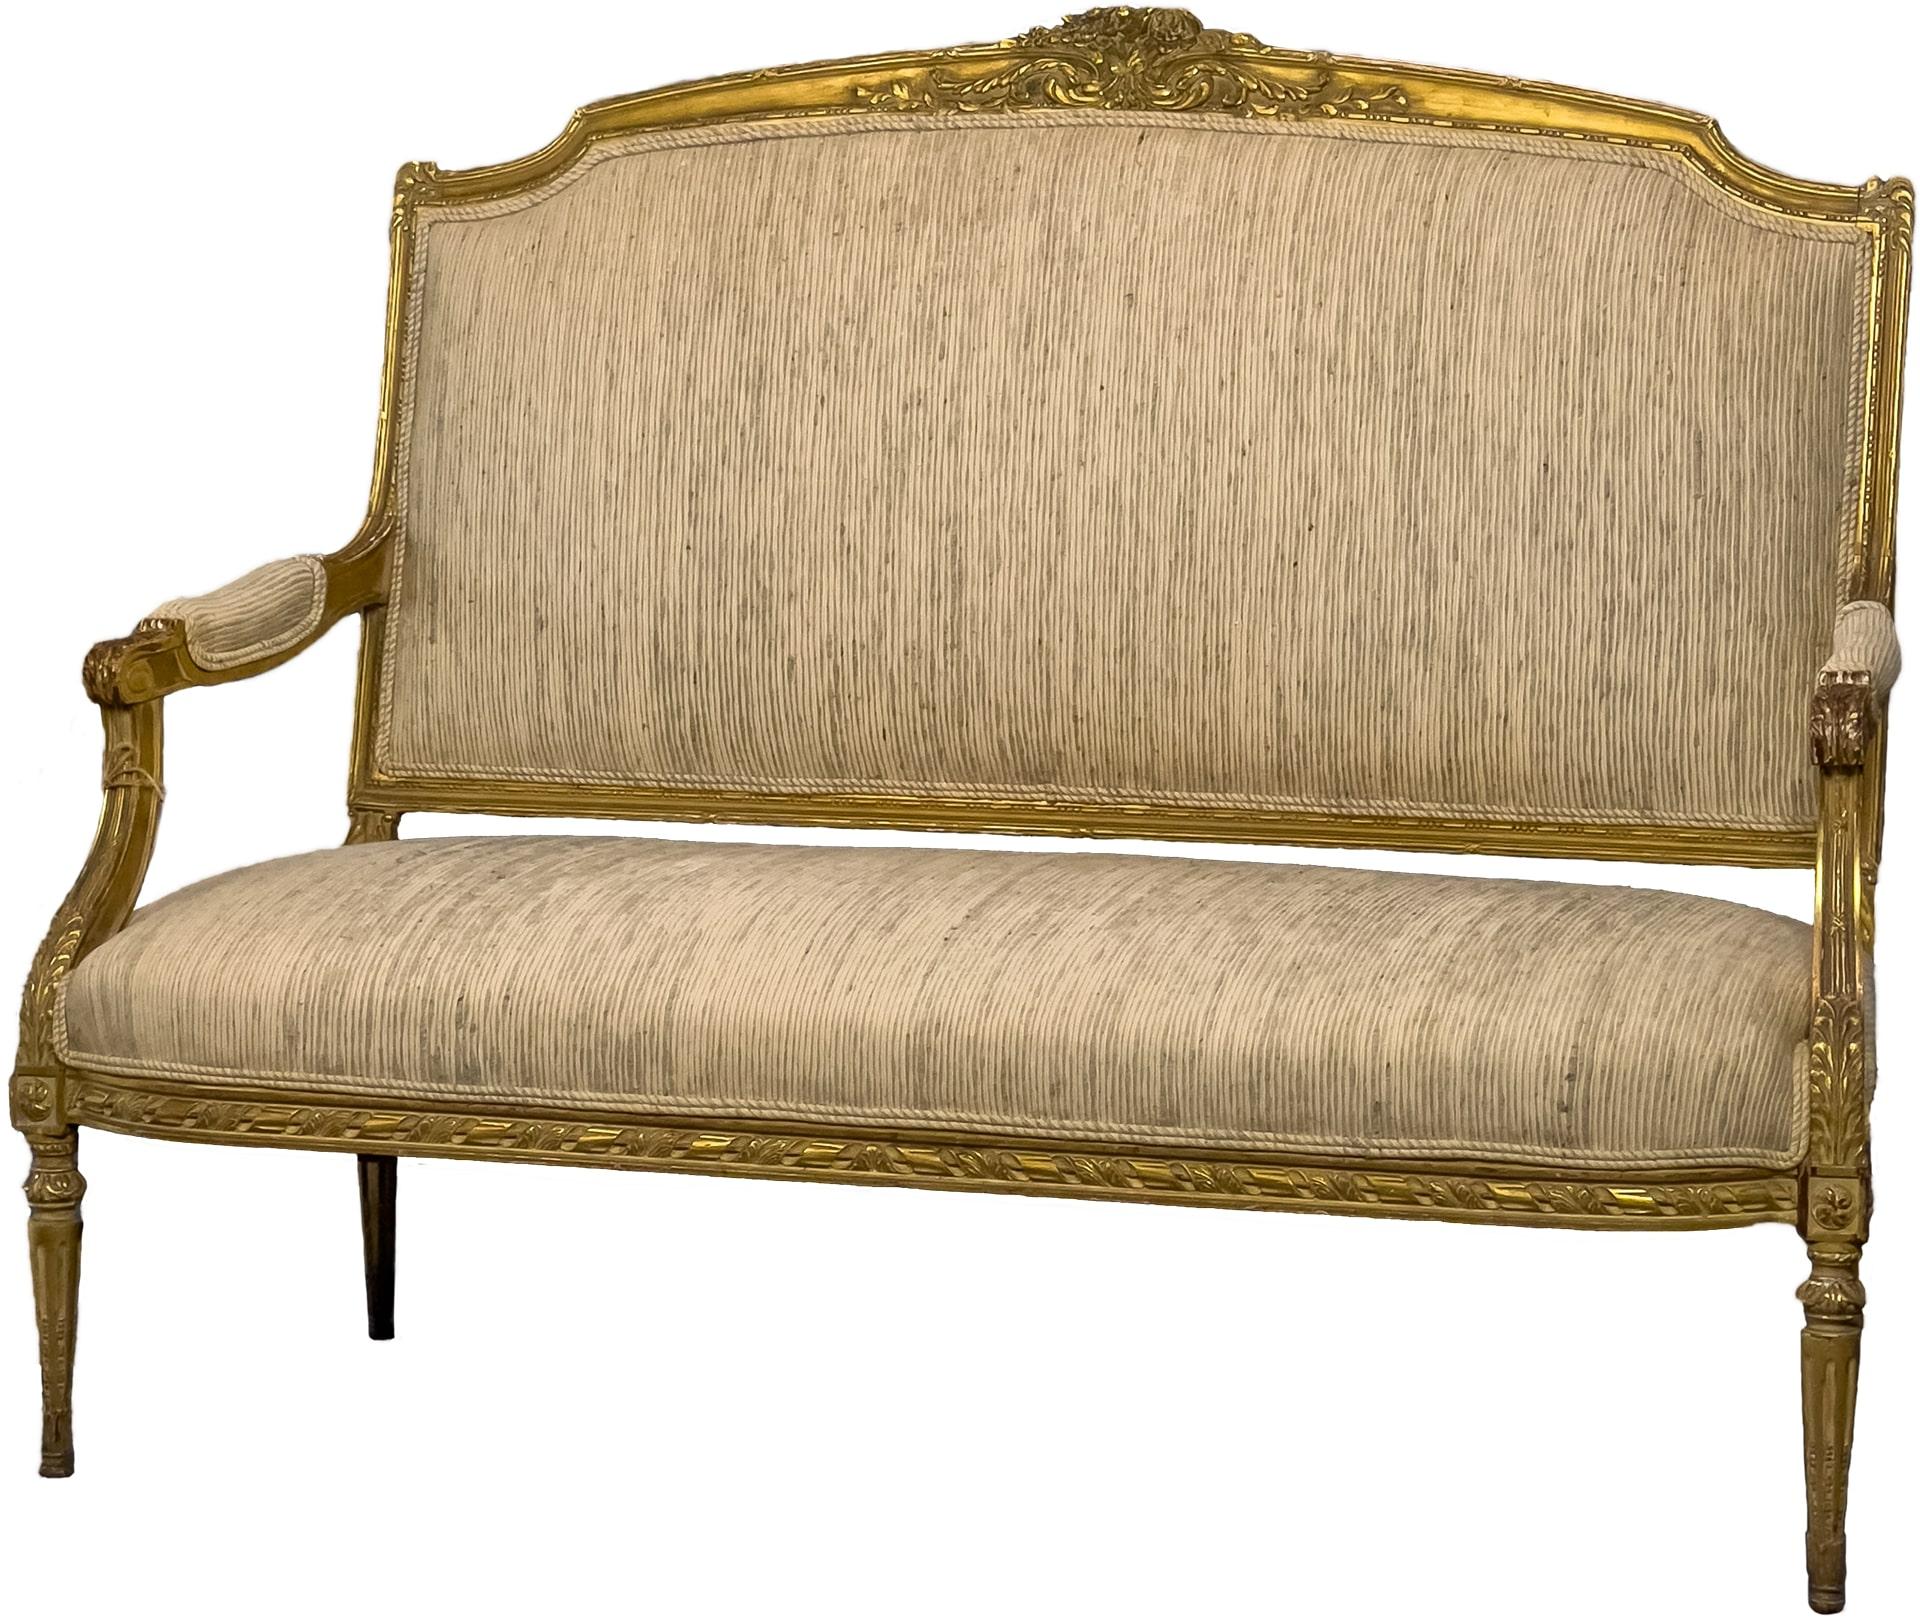 Beau canapé ancien Louis XVI en bois et dorure. Ce canapé est originaire de France et présente de belles sculptures le long de ses bords.